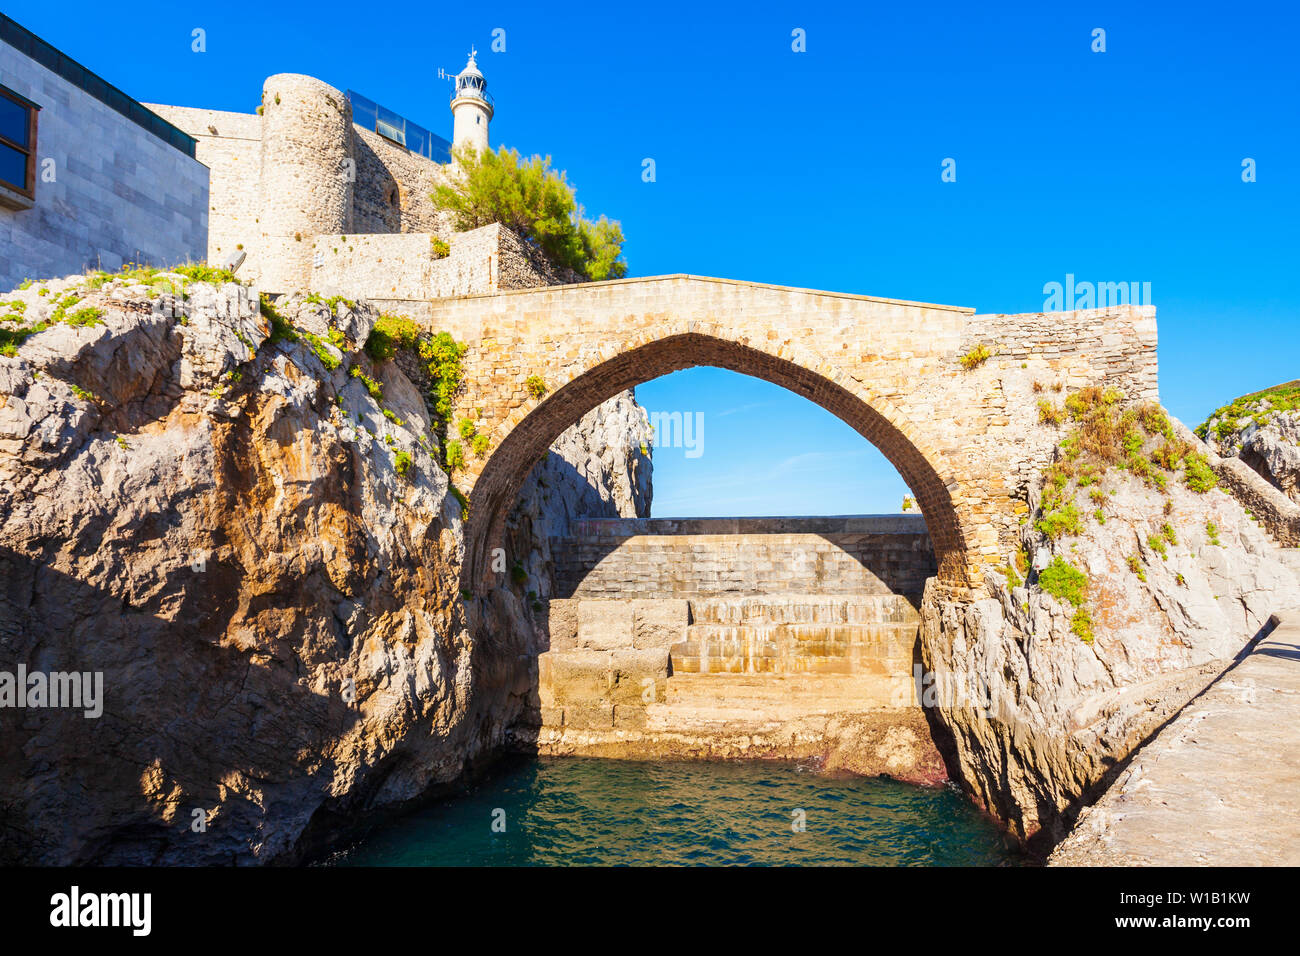 Castillo de Santa Ana puente y faro de Castro Urdiales, pequeña ciudad de la región de Cantabria, en el norte de España Foto de stock